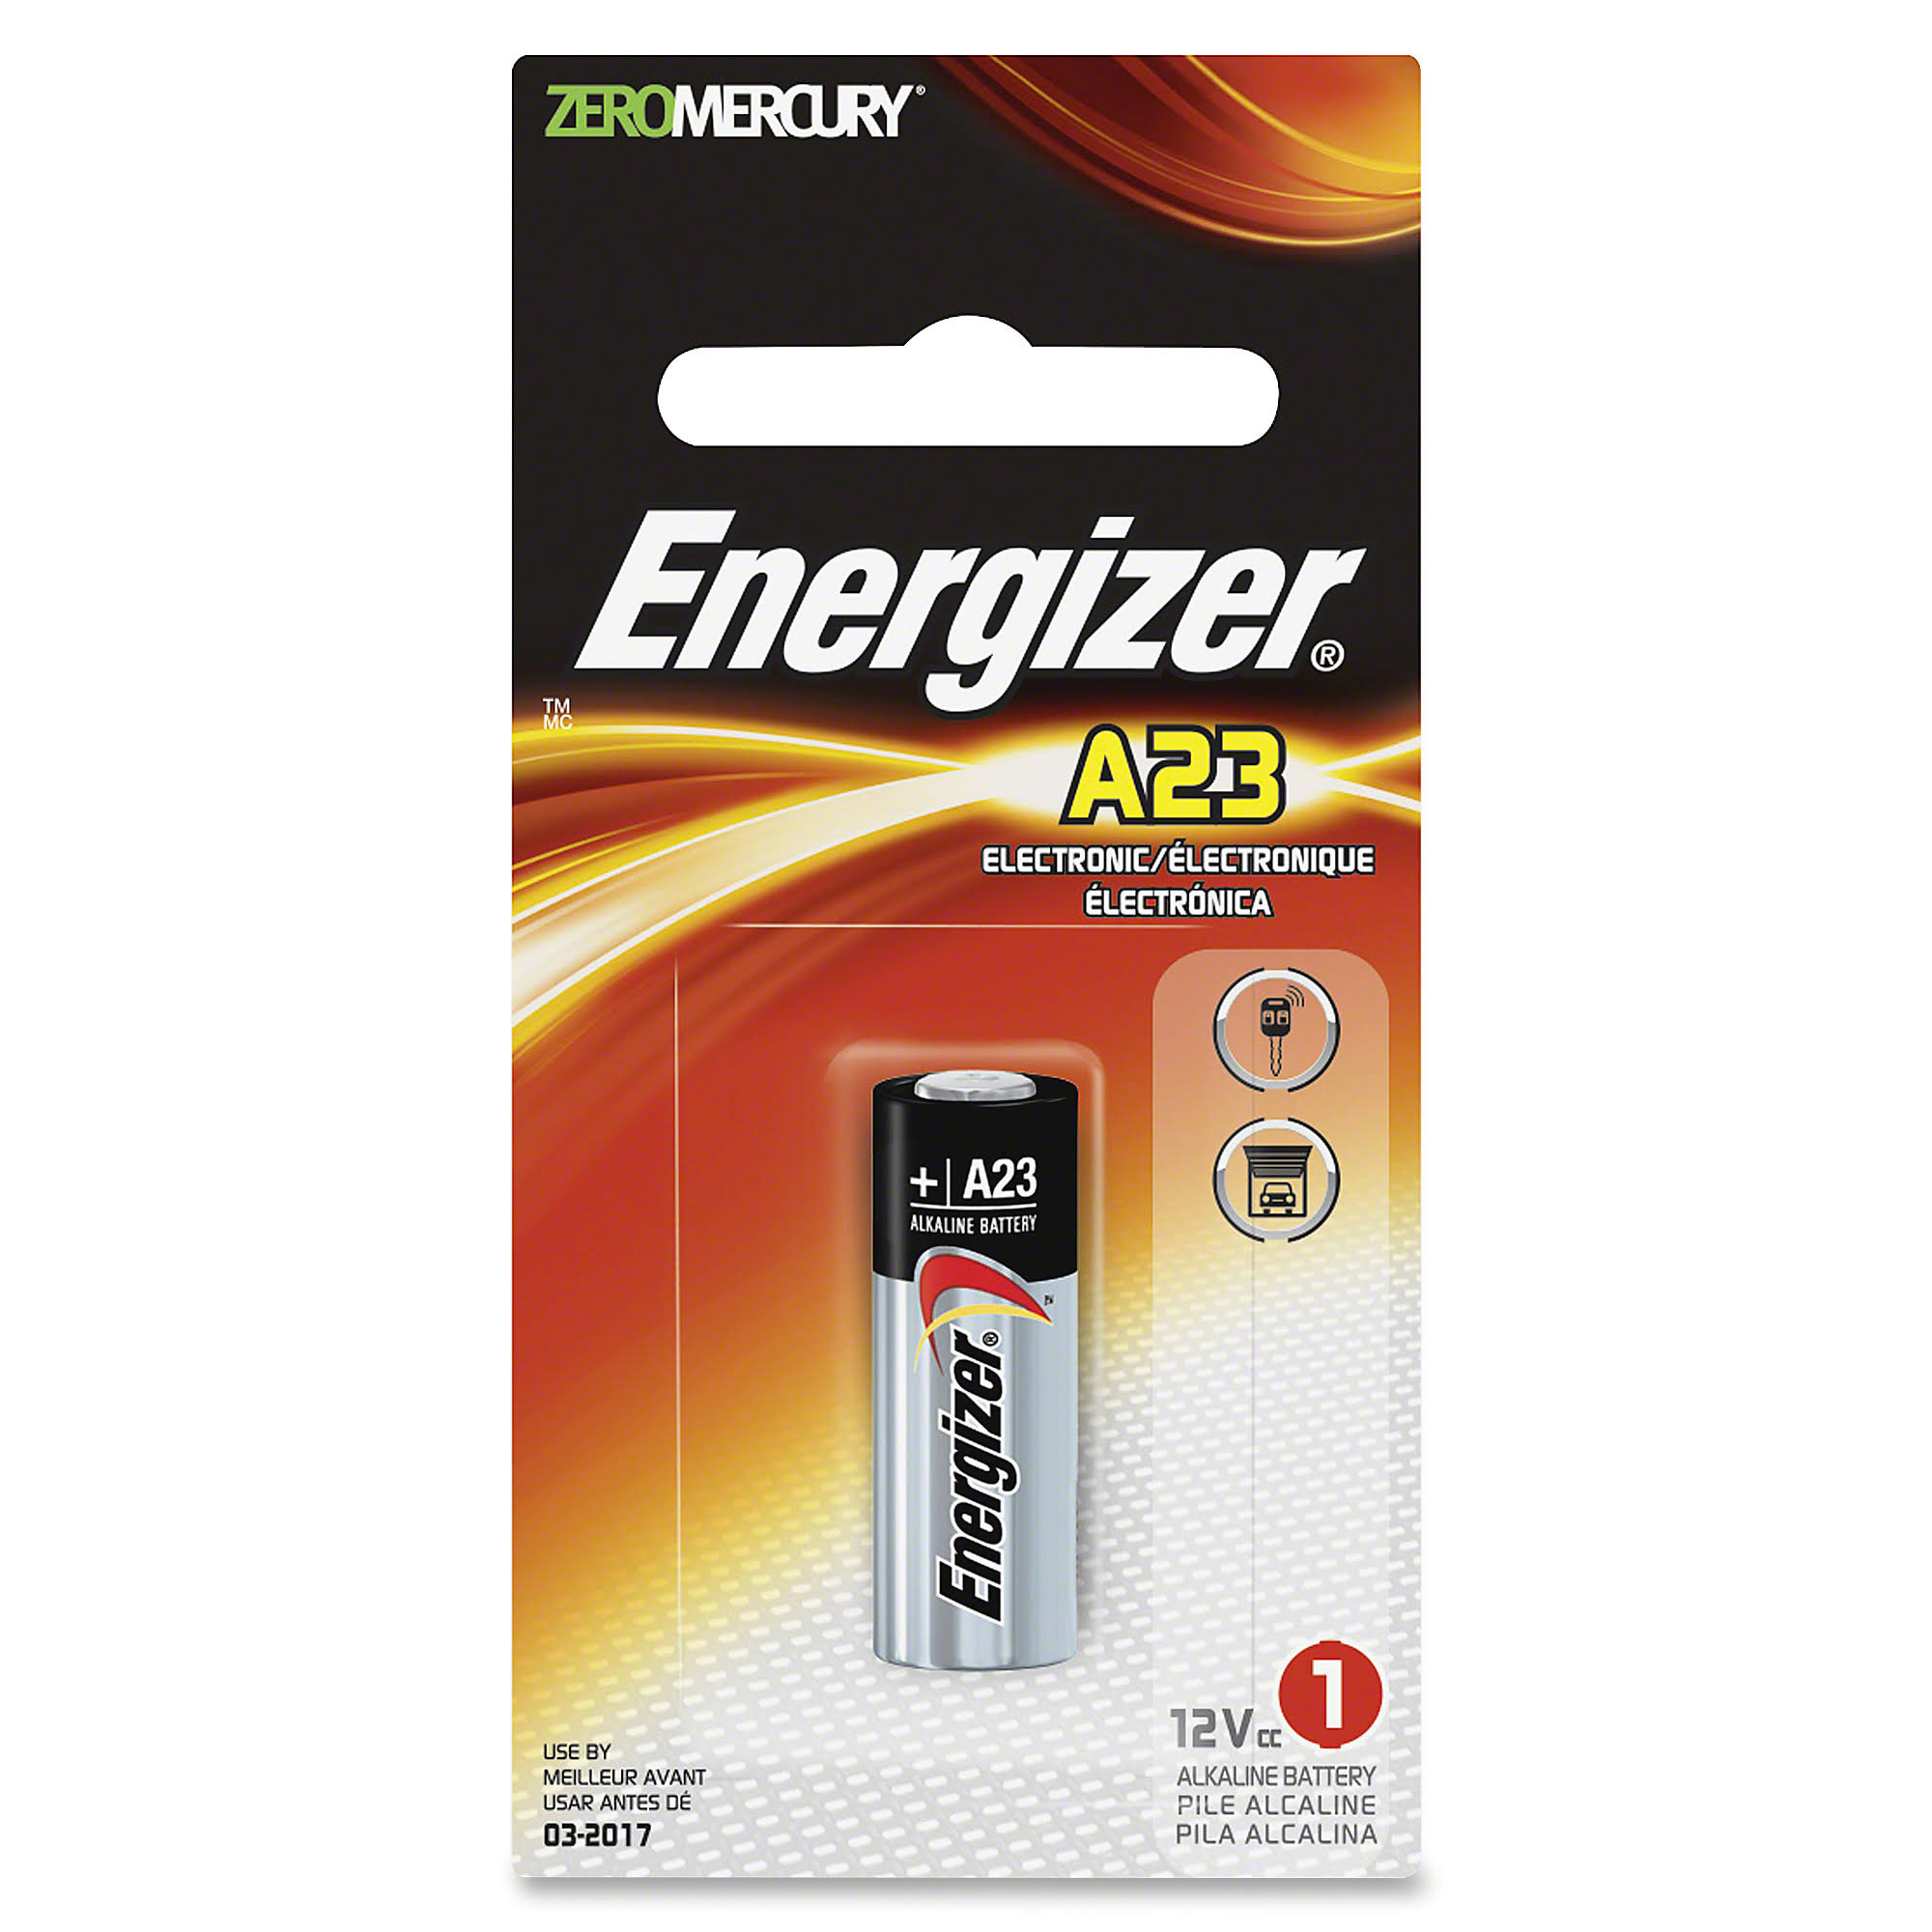 Energizer A23 Battery - 12V